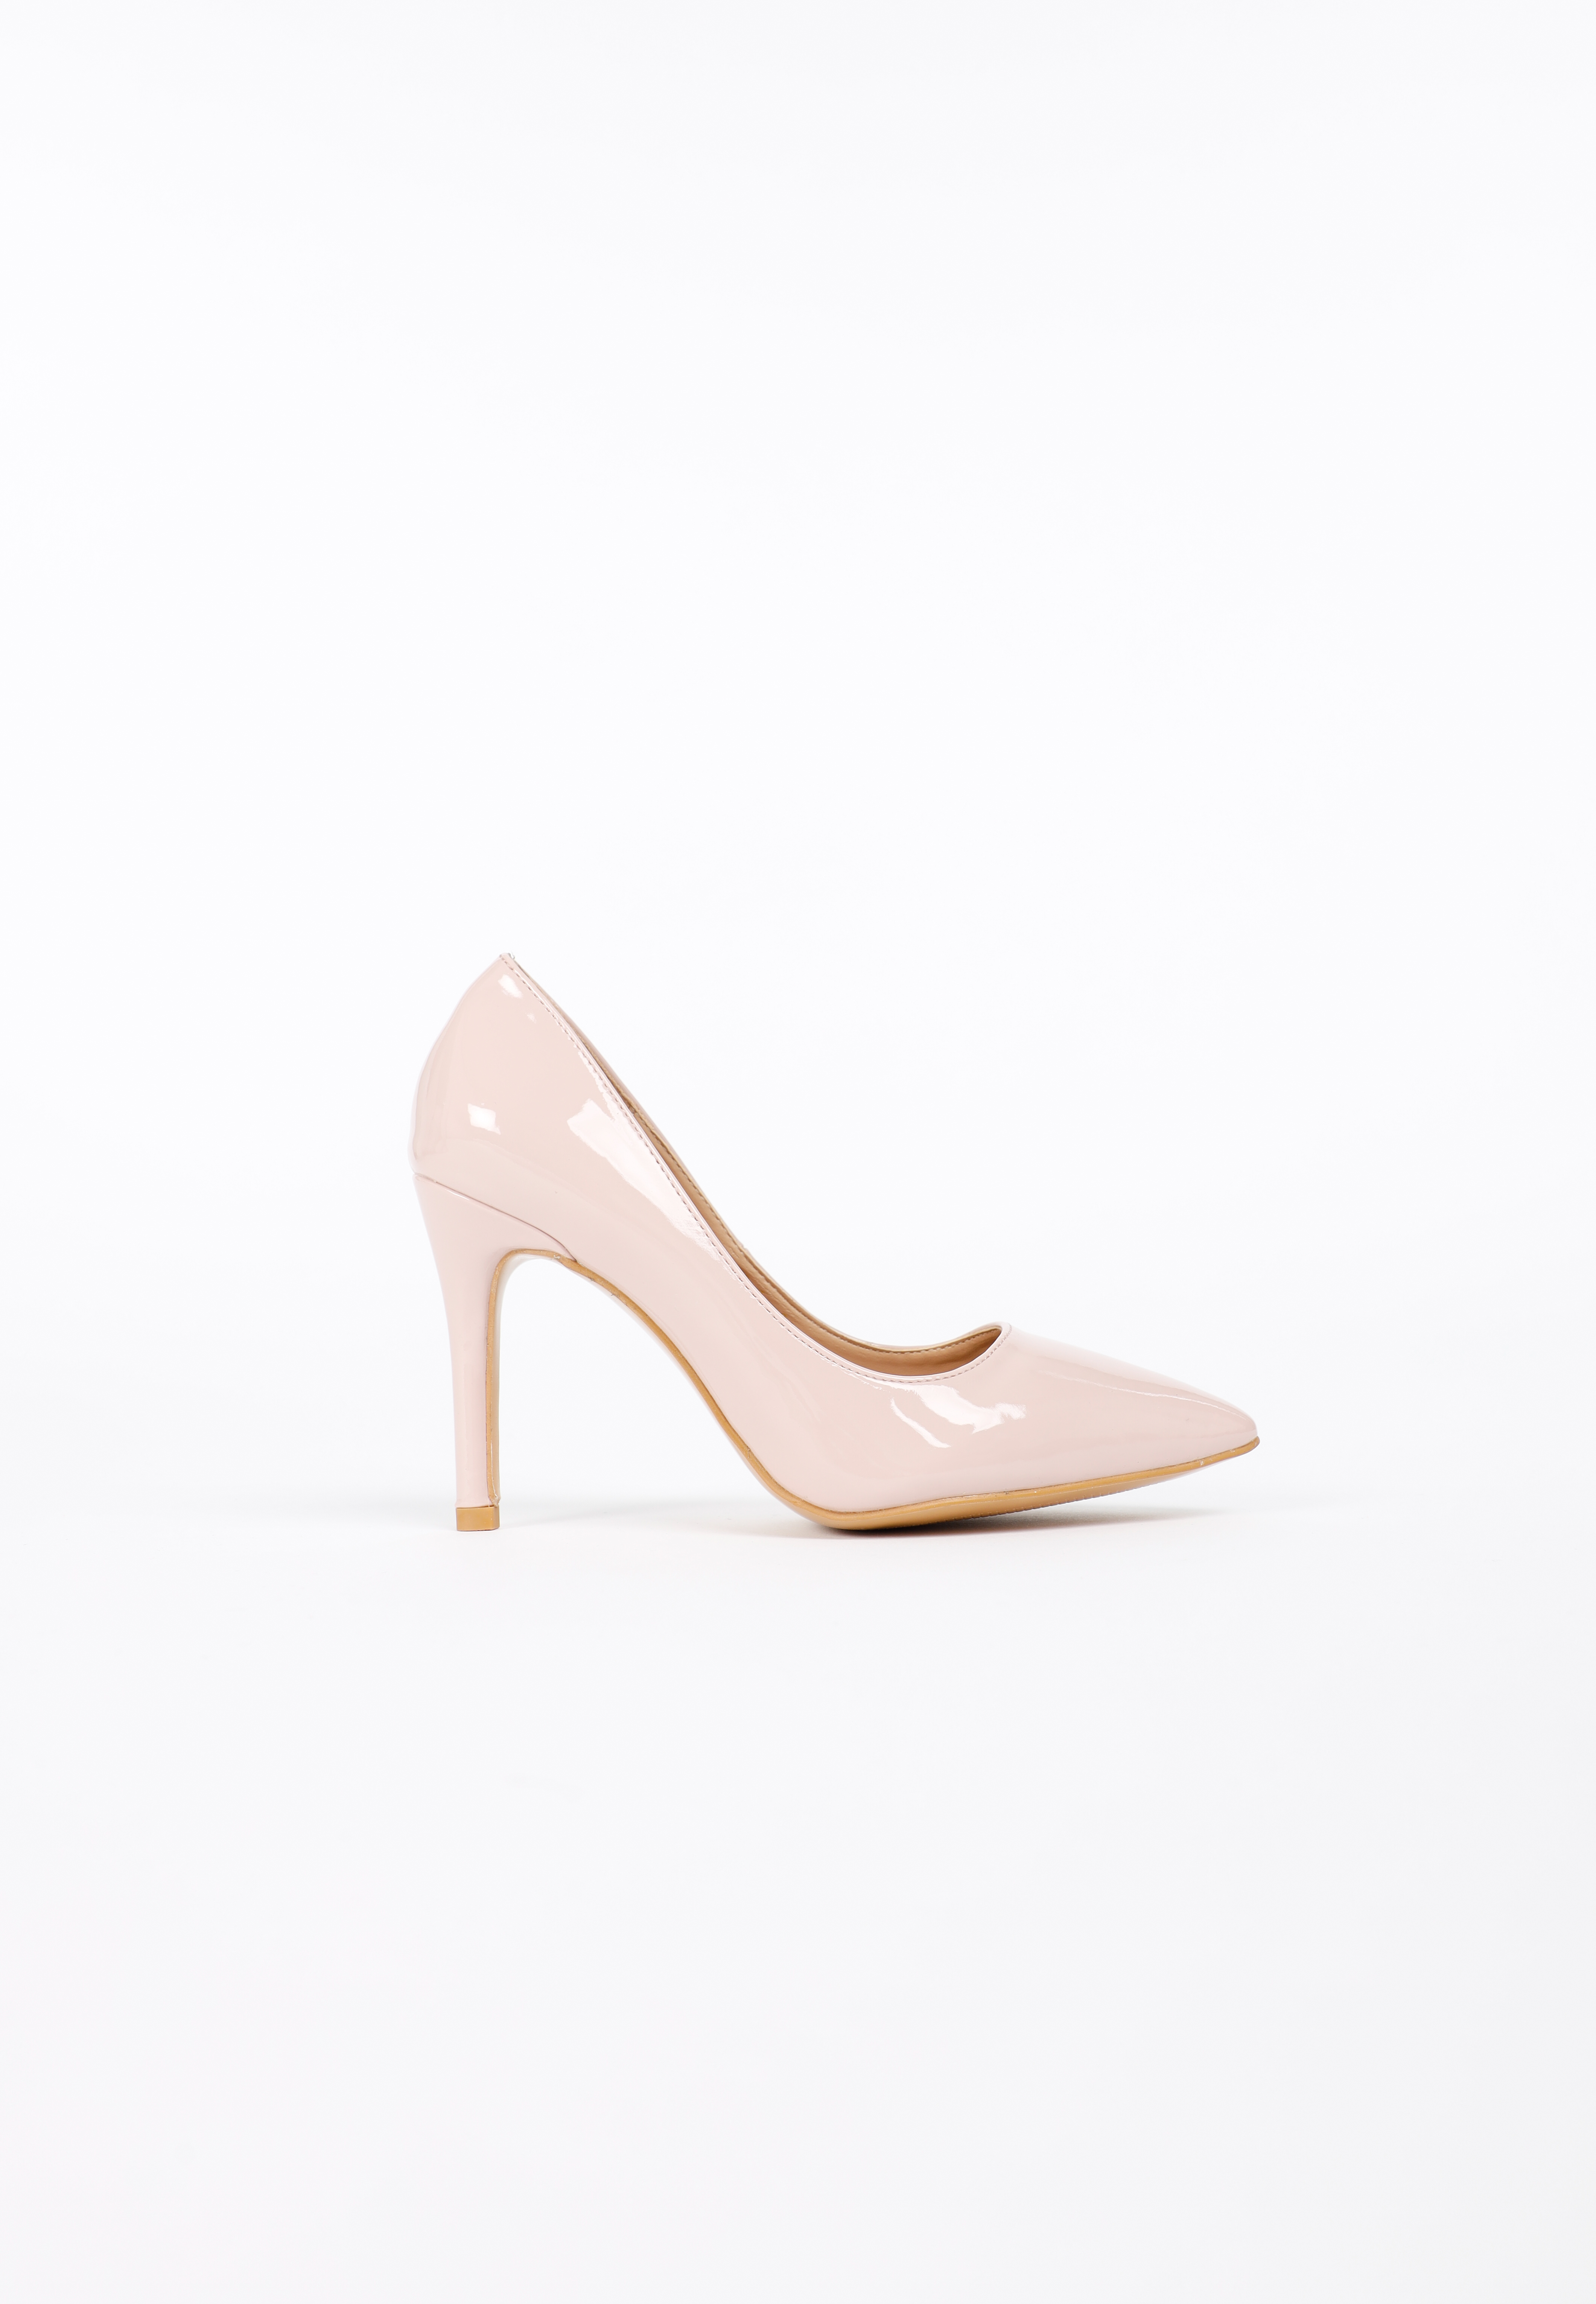 รองเท้าส้นสูง ดีไซน์หัวแหลม Pink Patent High Heels MAC & GILL